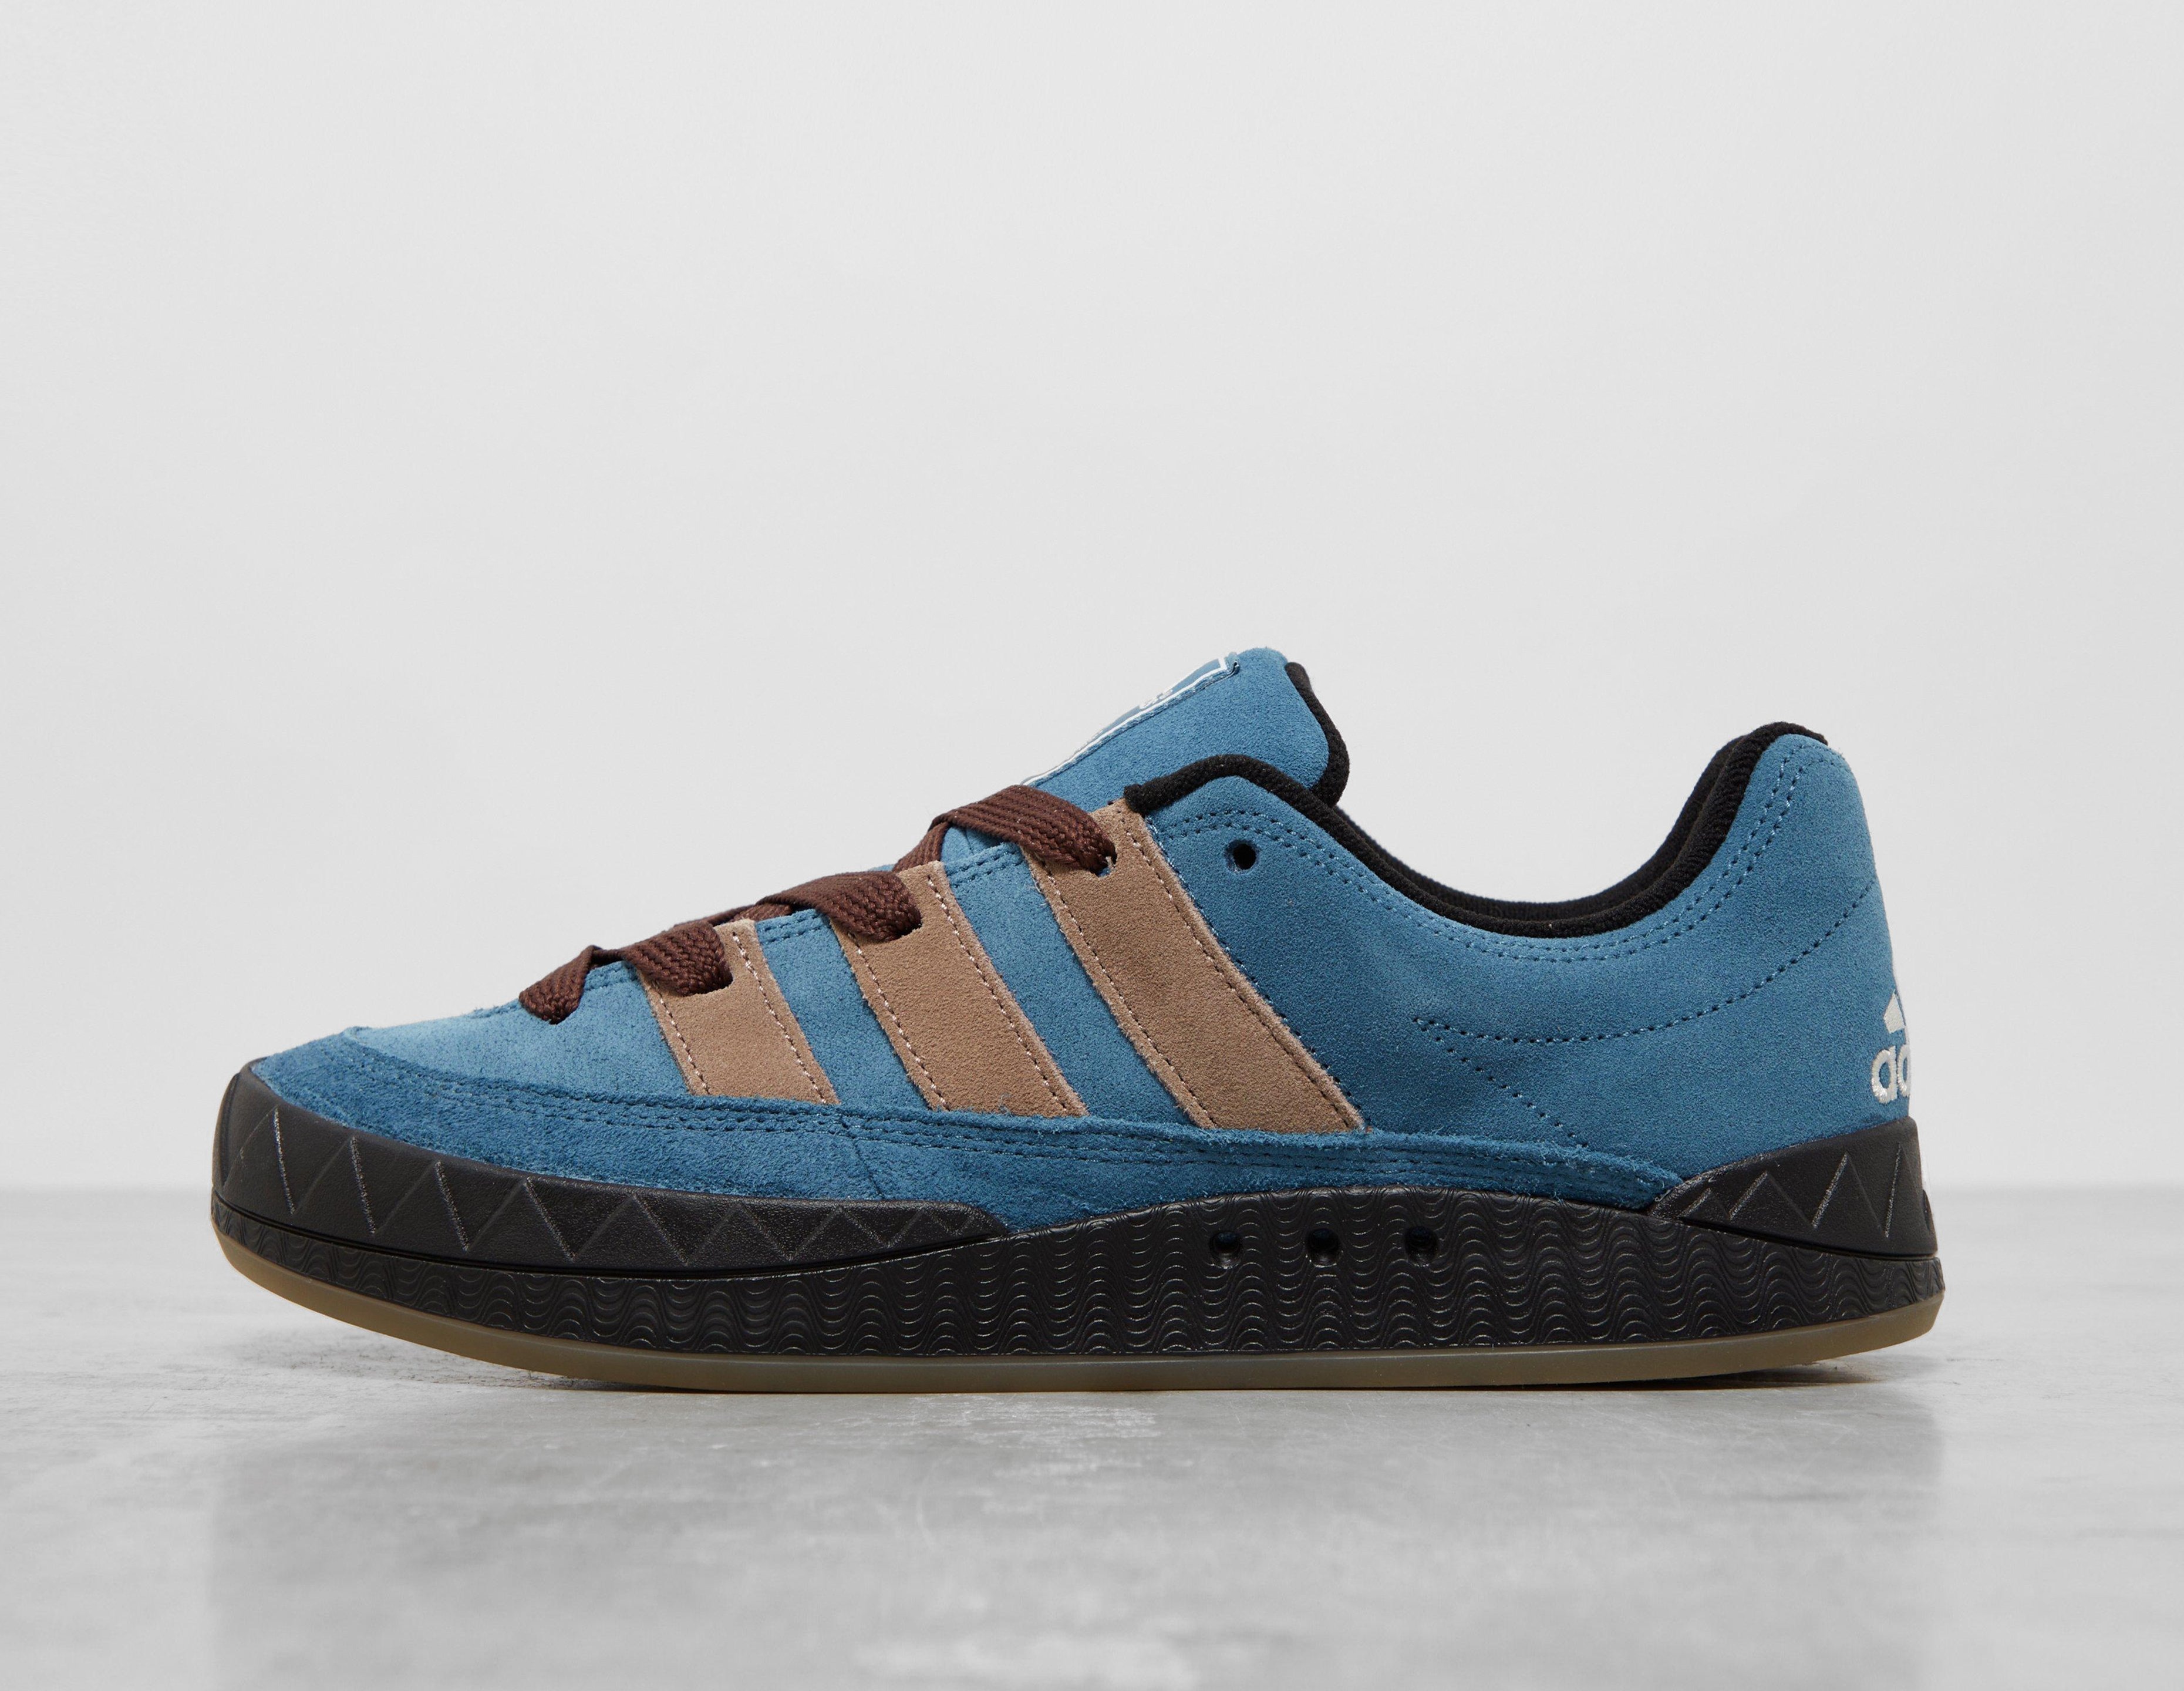 Adidas Men's Originals Beckenbauer Classic Sneakers Retro Trainers Blue